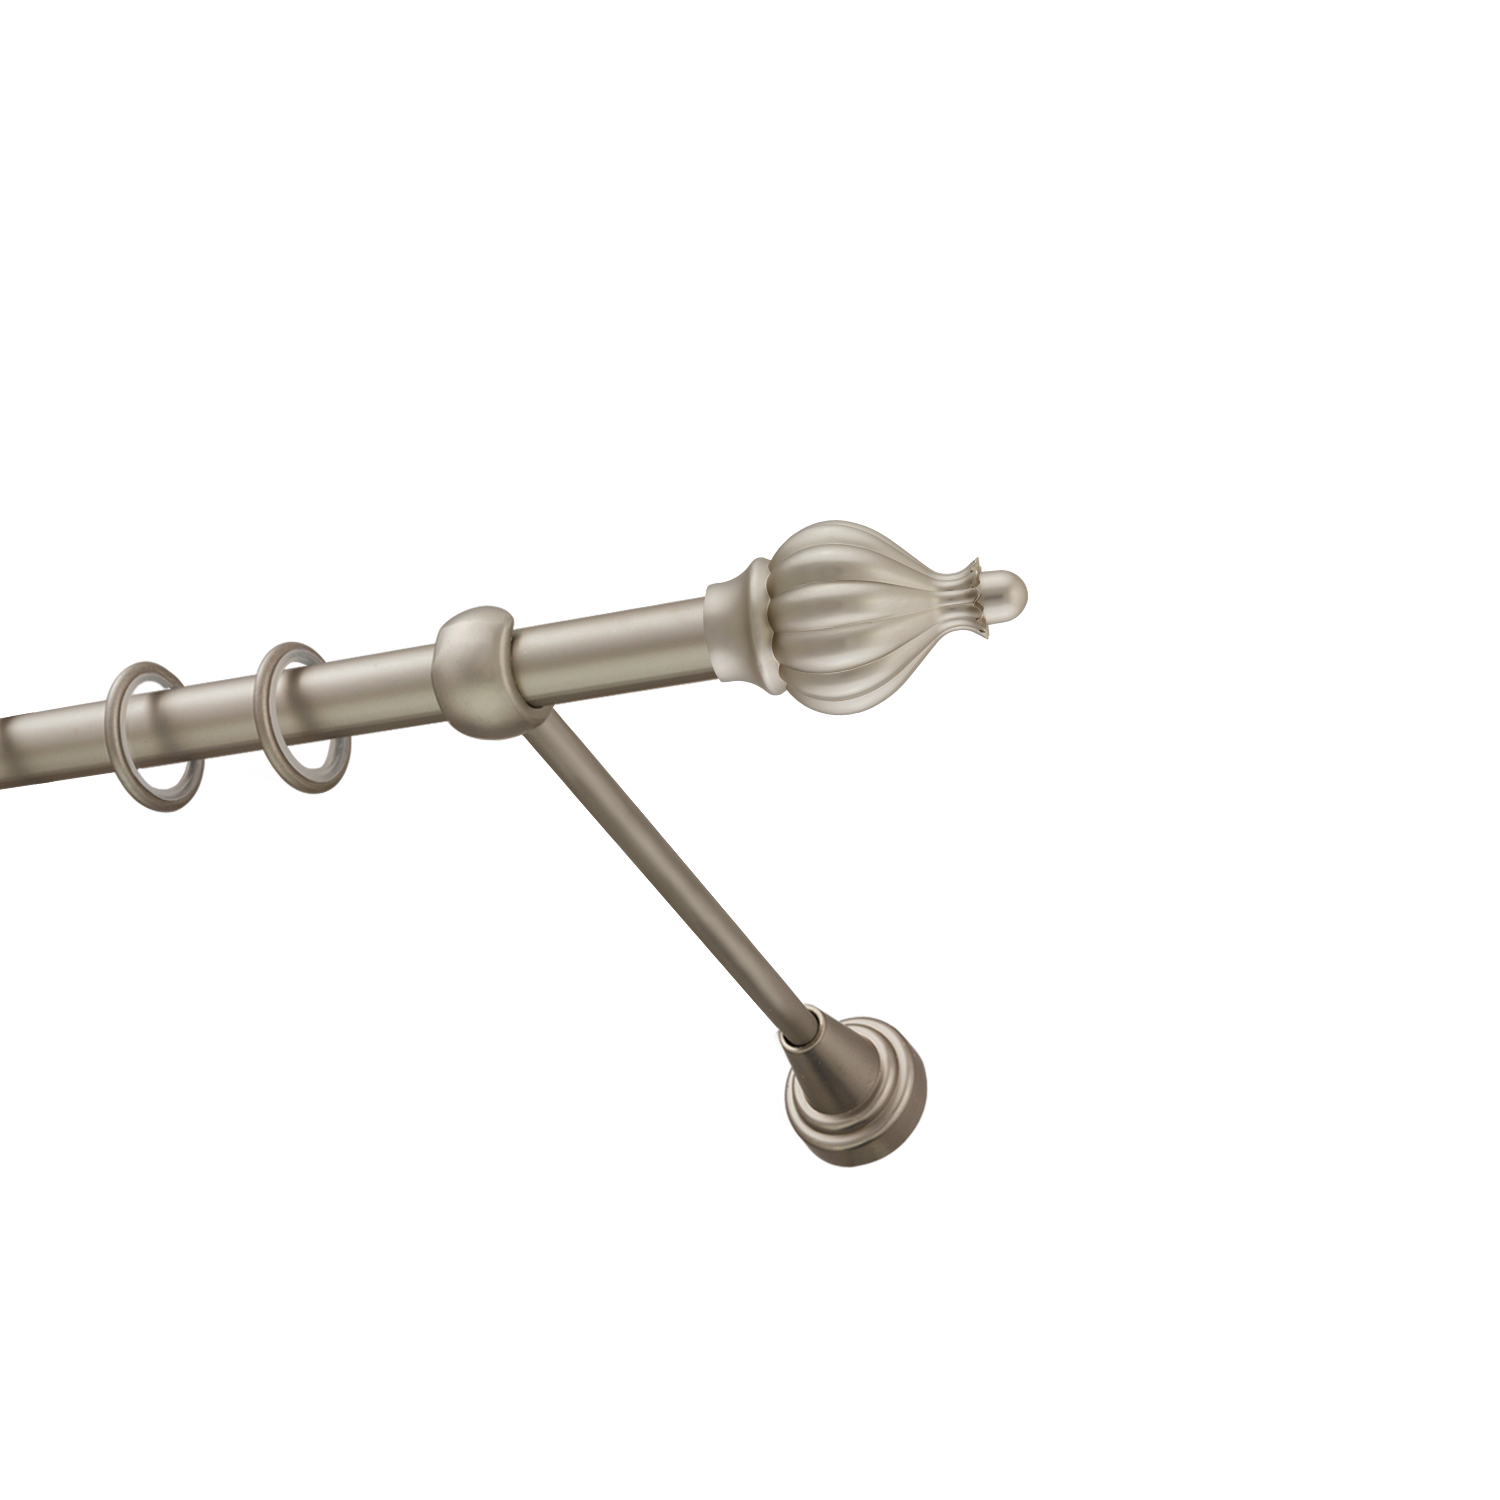 Металлический карниз для штор Афродита, однорядный 16 мм, сталь, гладкая штанга, длина 160 см - фото Wikidecor.ru